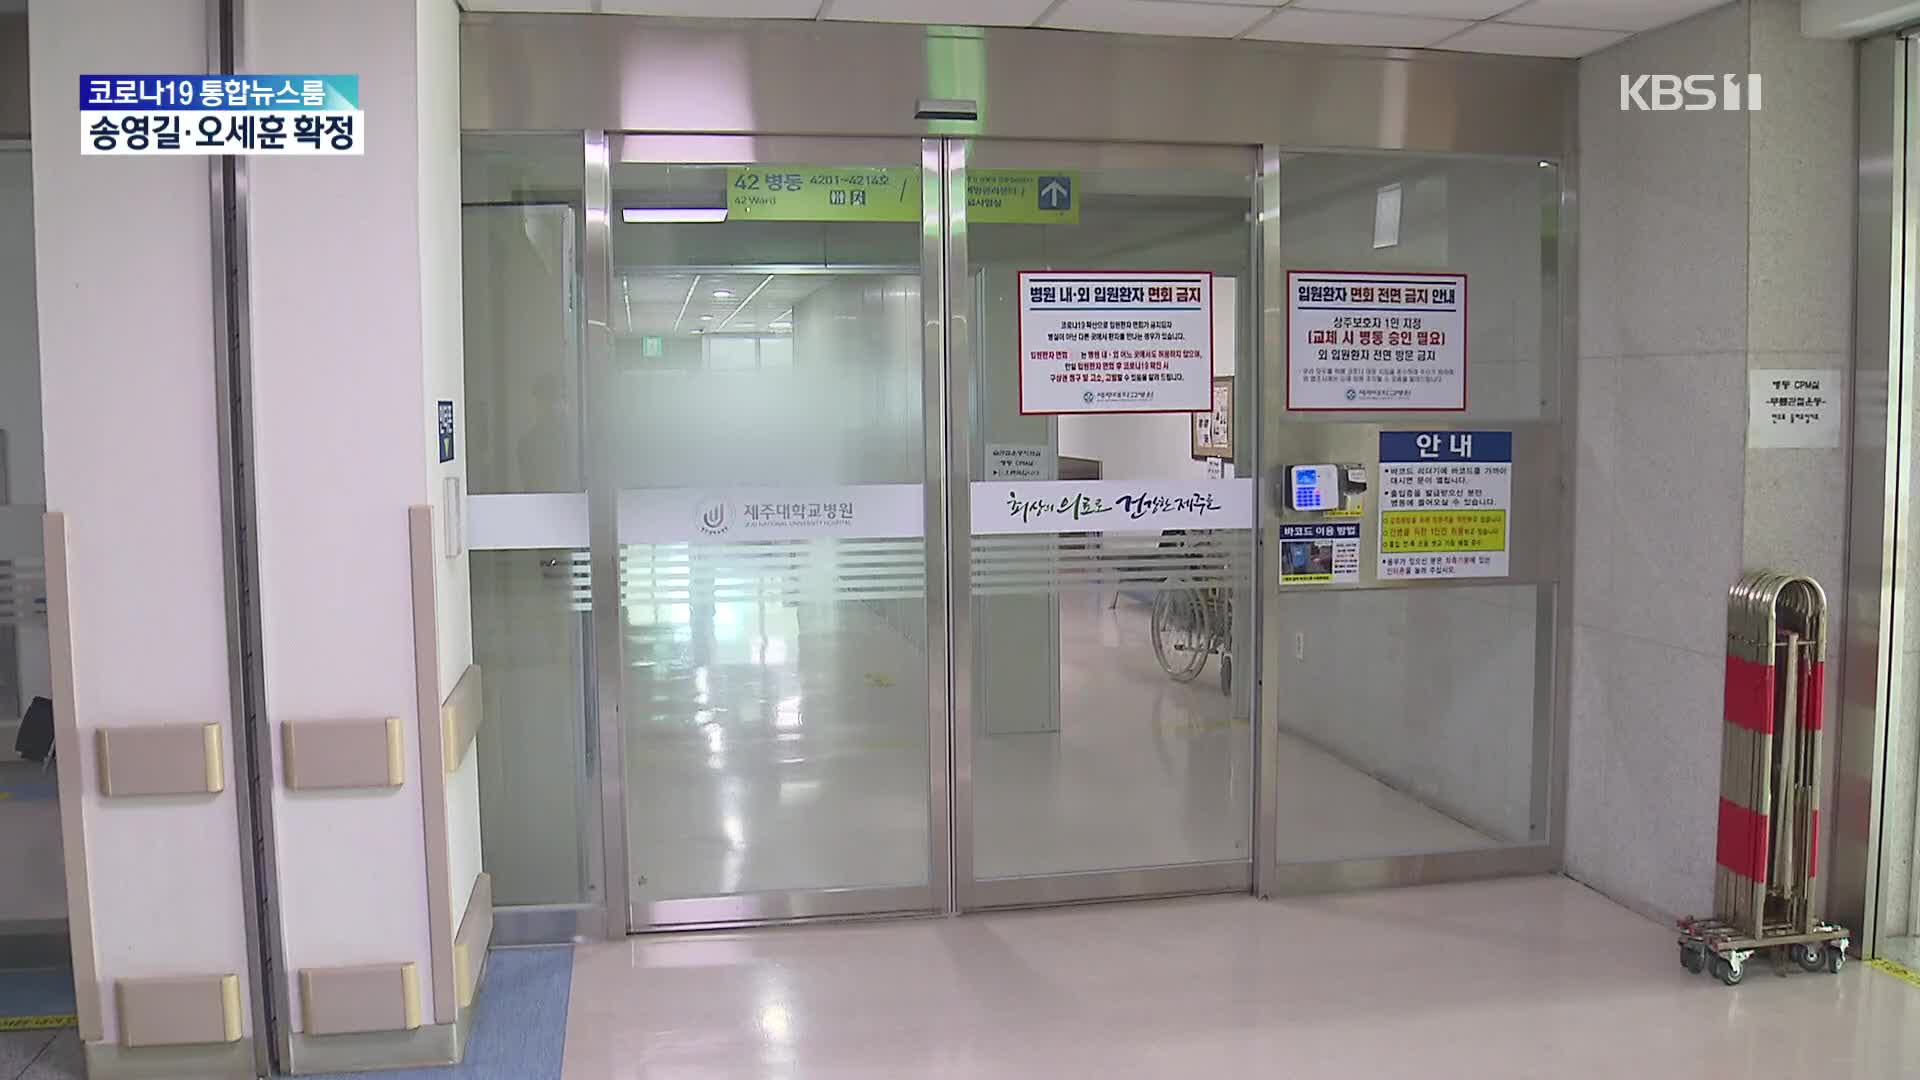 13개월 영아 사망 간호사들 휴대폰 압수…의무기록 삭제 정황